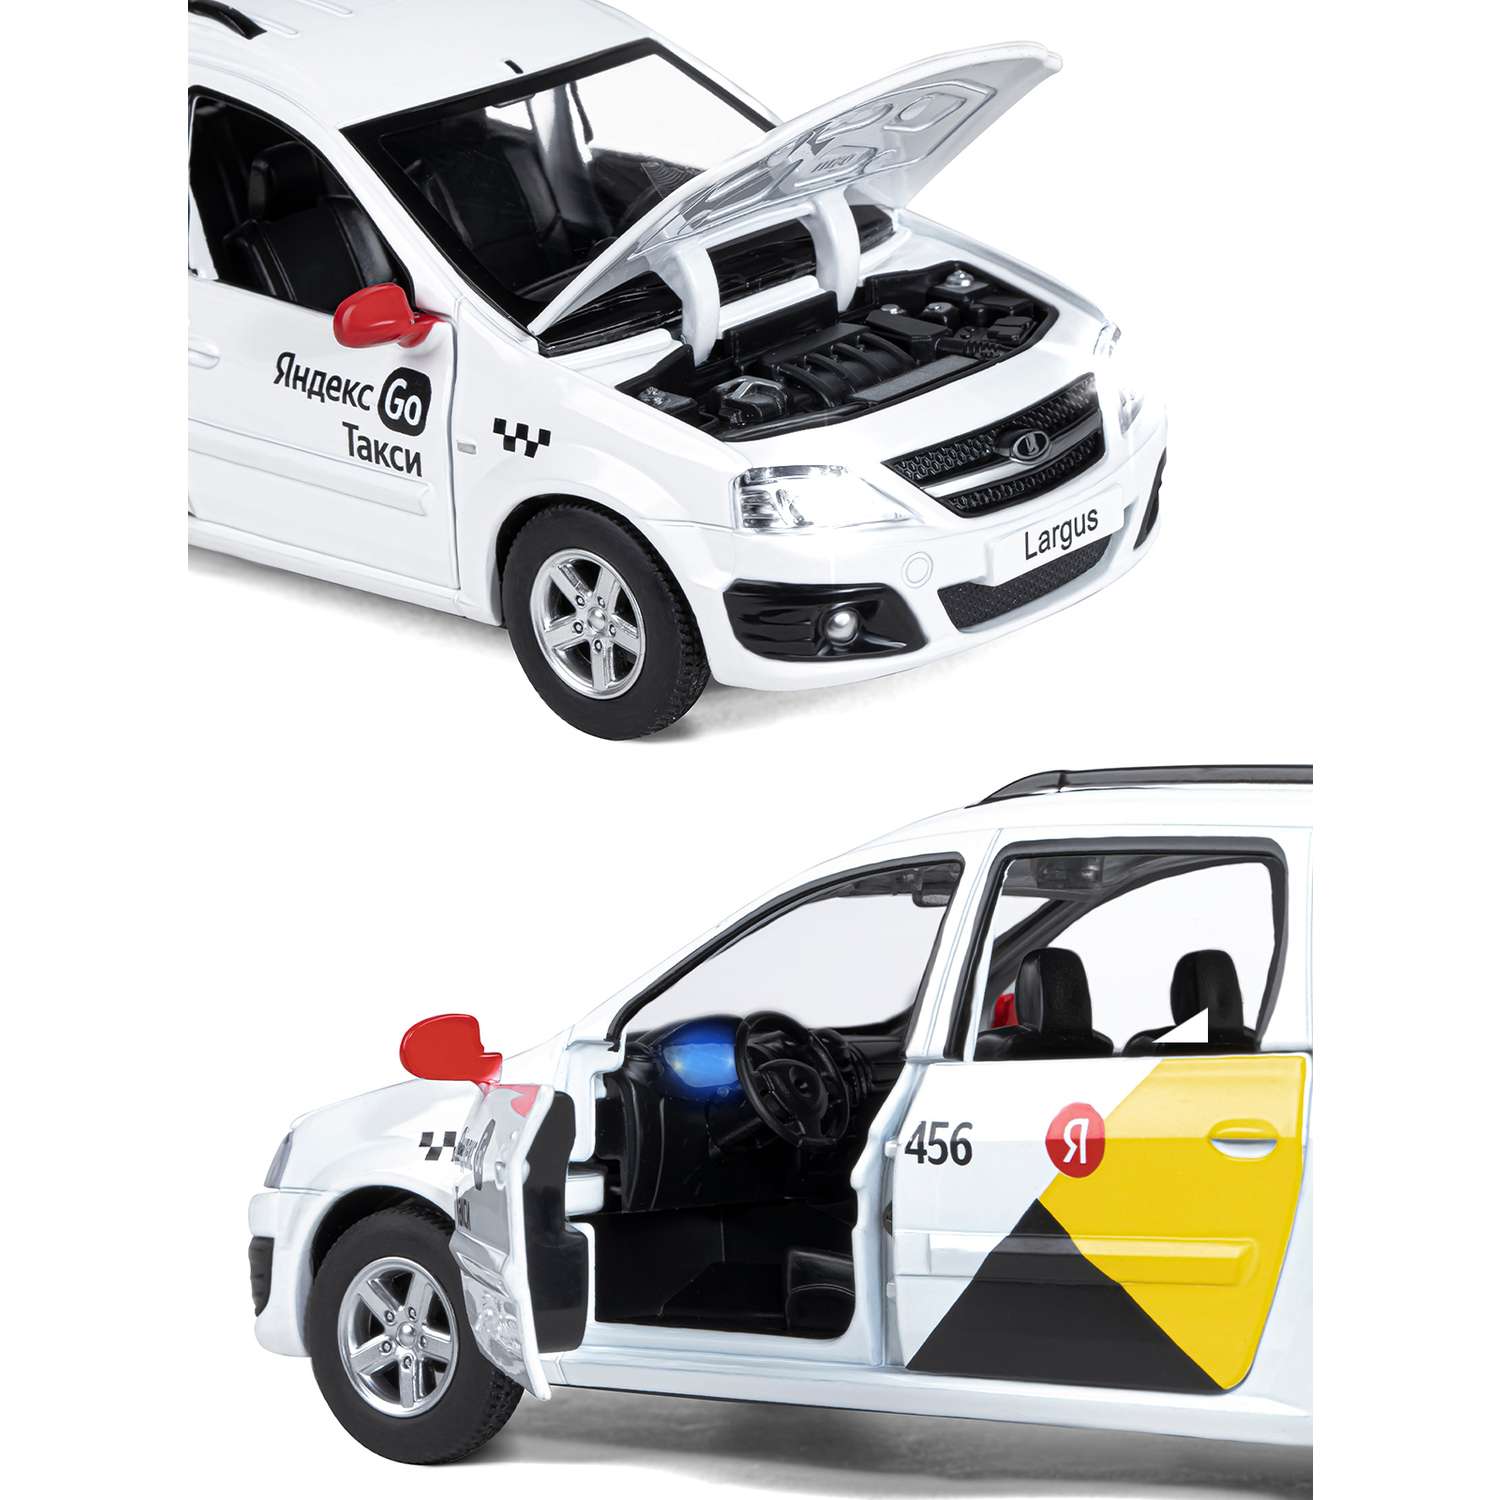 Машинка металлическая Яндекс GO игрушка детская LADA LARGUS 1:24 белый Озвучено Алисой JB1251343/Яндекс GO - фото 8